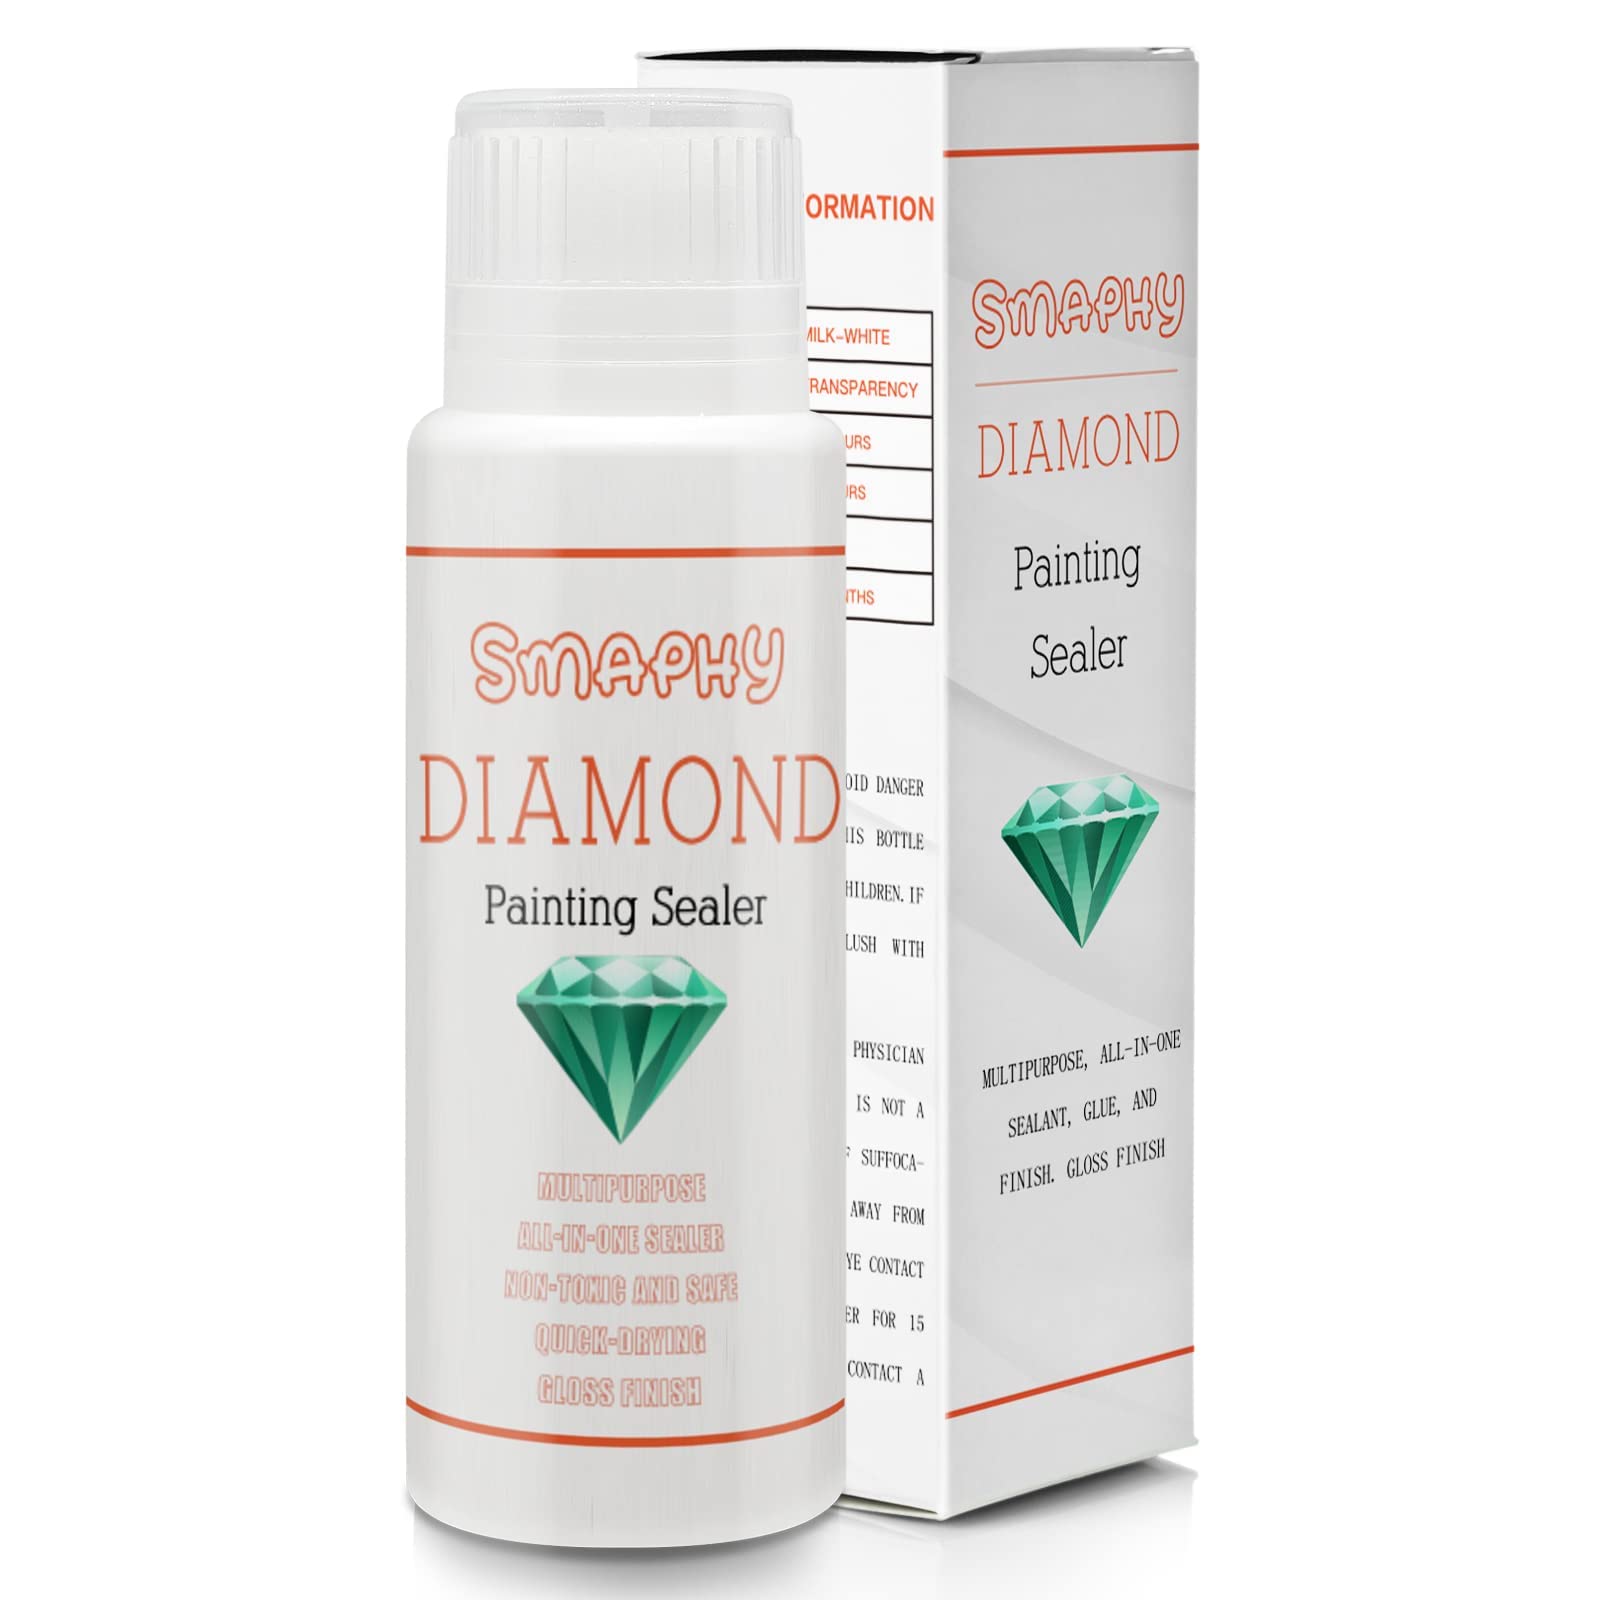 Diamond Painting Sealer 5d Diamond Painting Glue Permanently - Temu